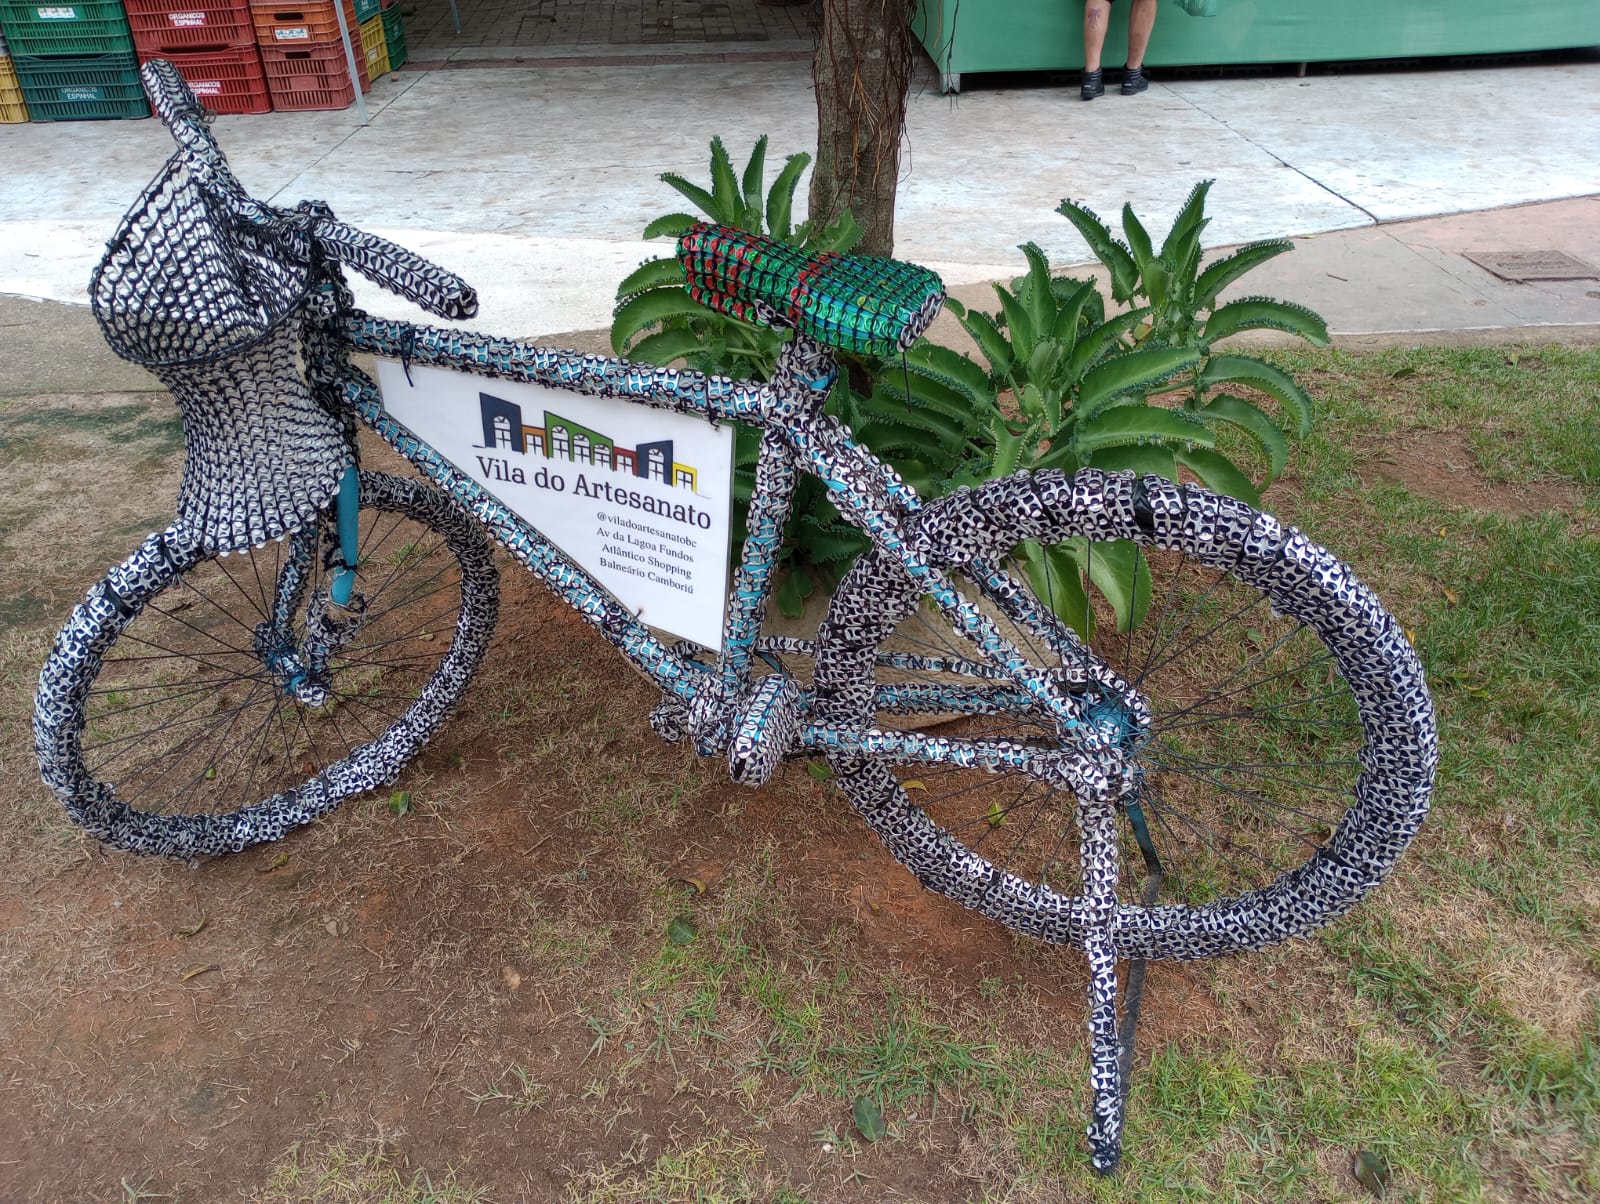 Lacres de latas de cerveja cobrem uma bicicleta em Balneário Camboriú